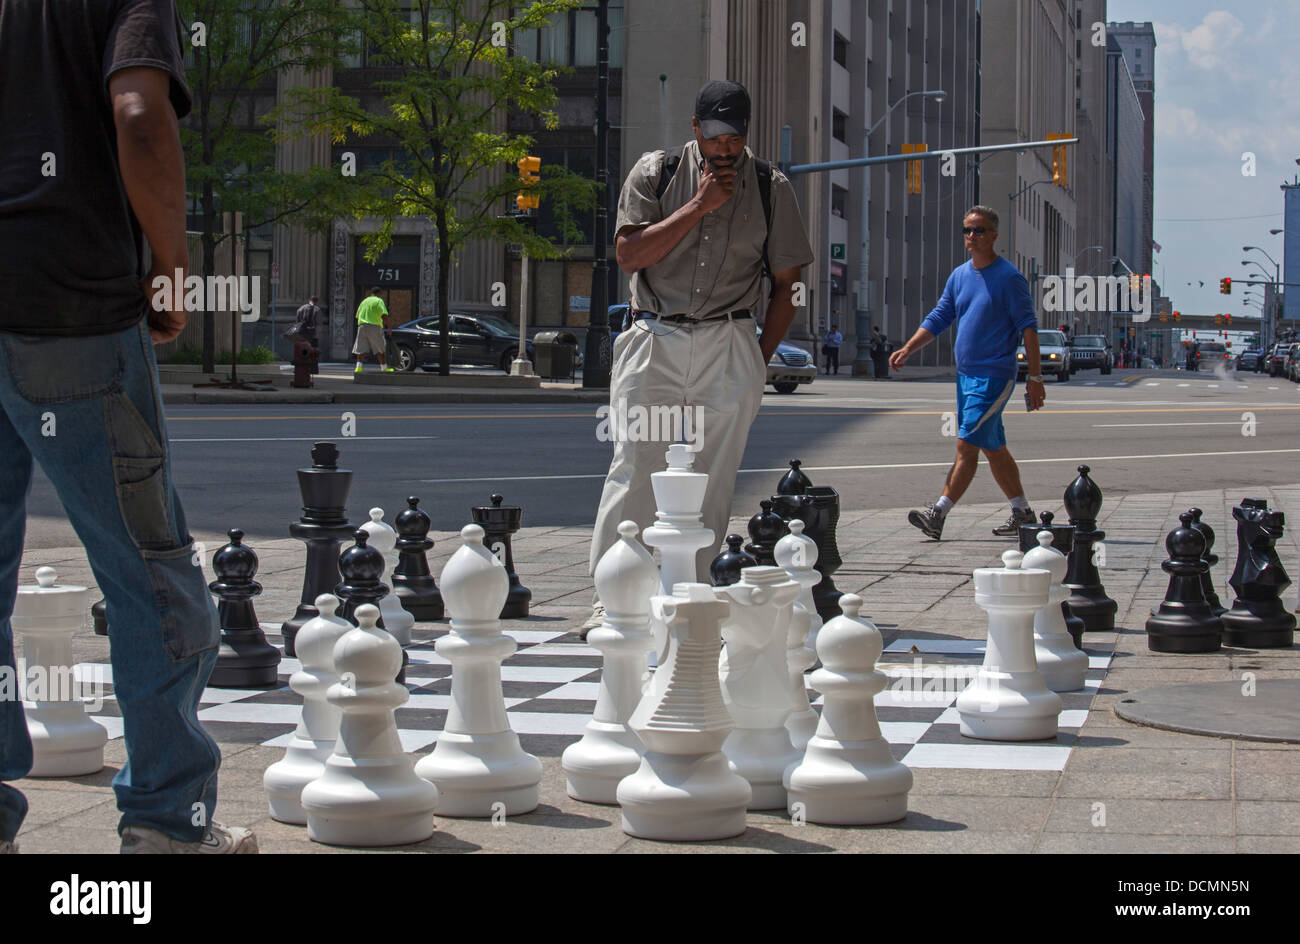 Detroit, Michigan - zwei Männer spielen Schach auf einem Bürgersteig Schachbrett in der Innenstadt von Detroit. Stockfoto